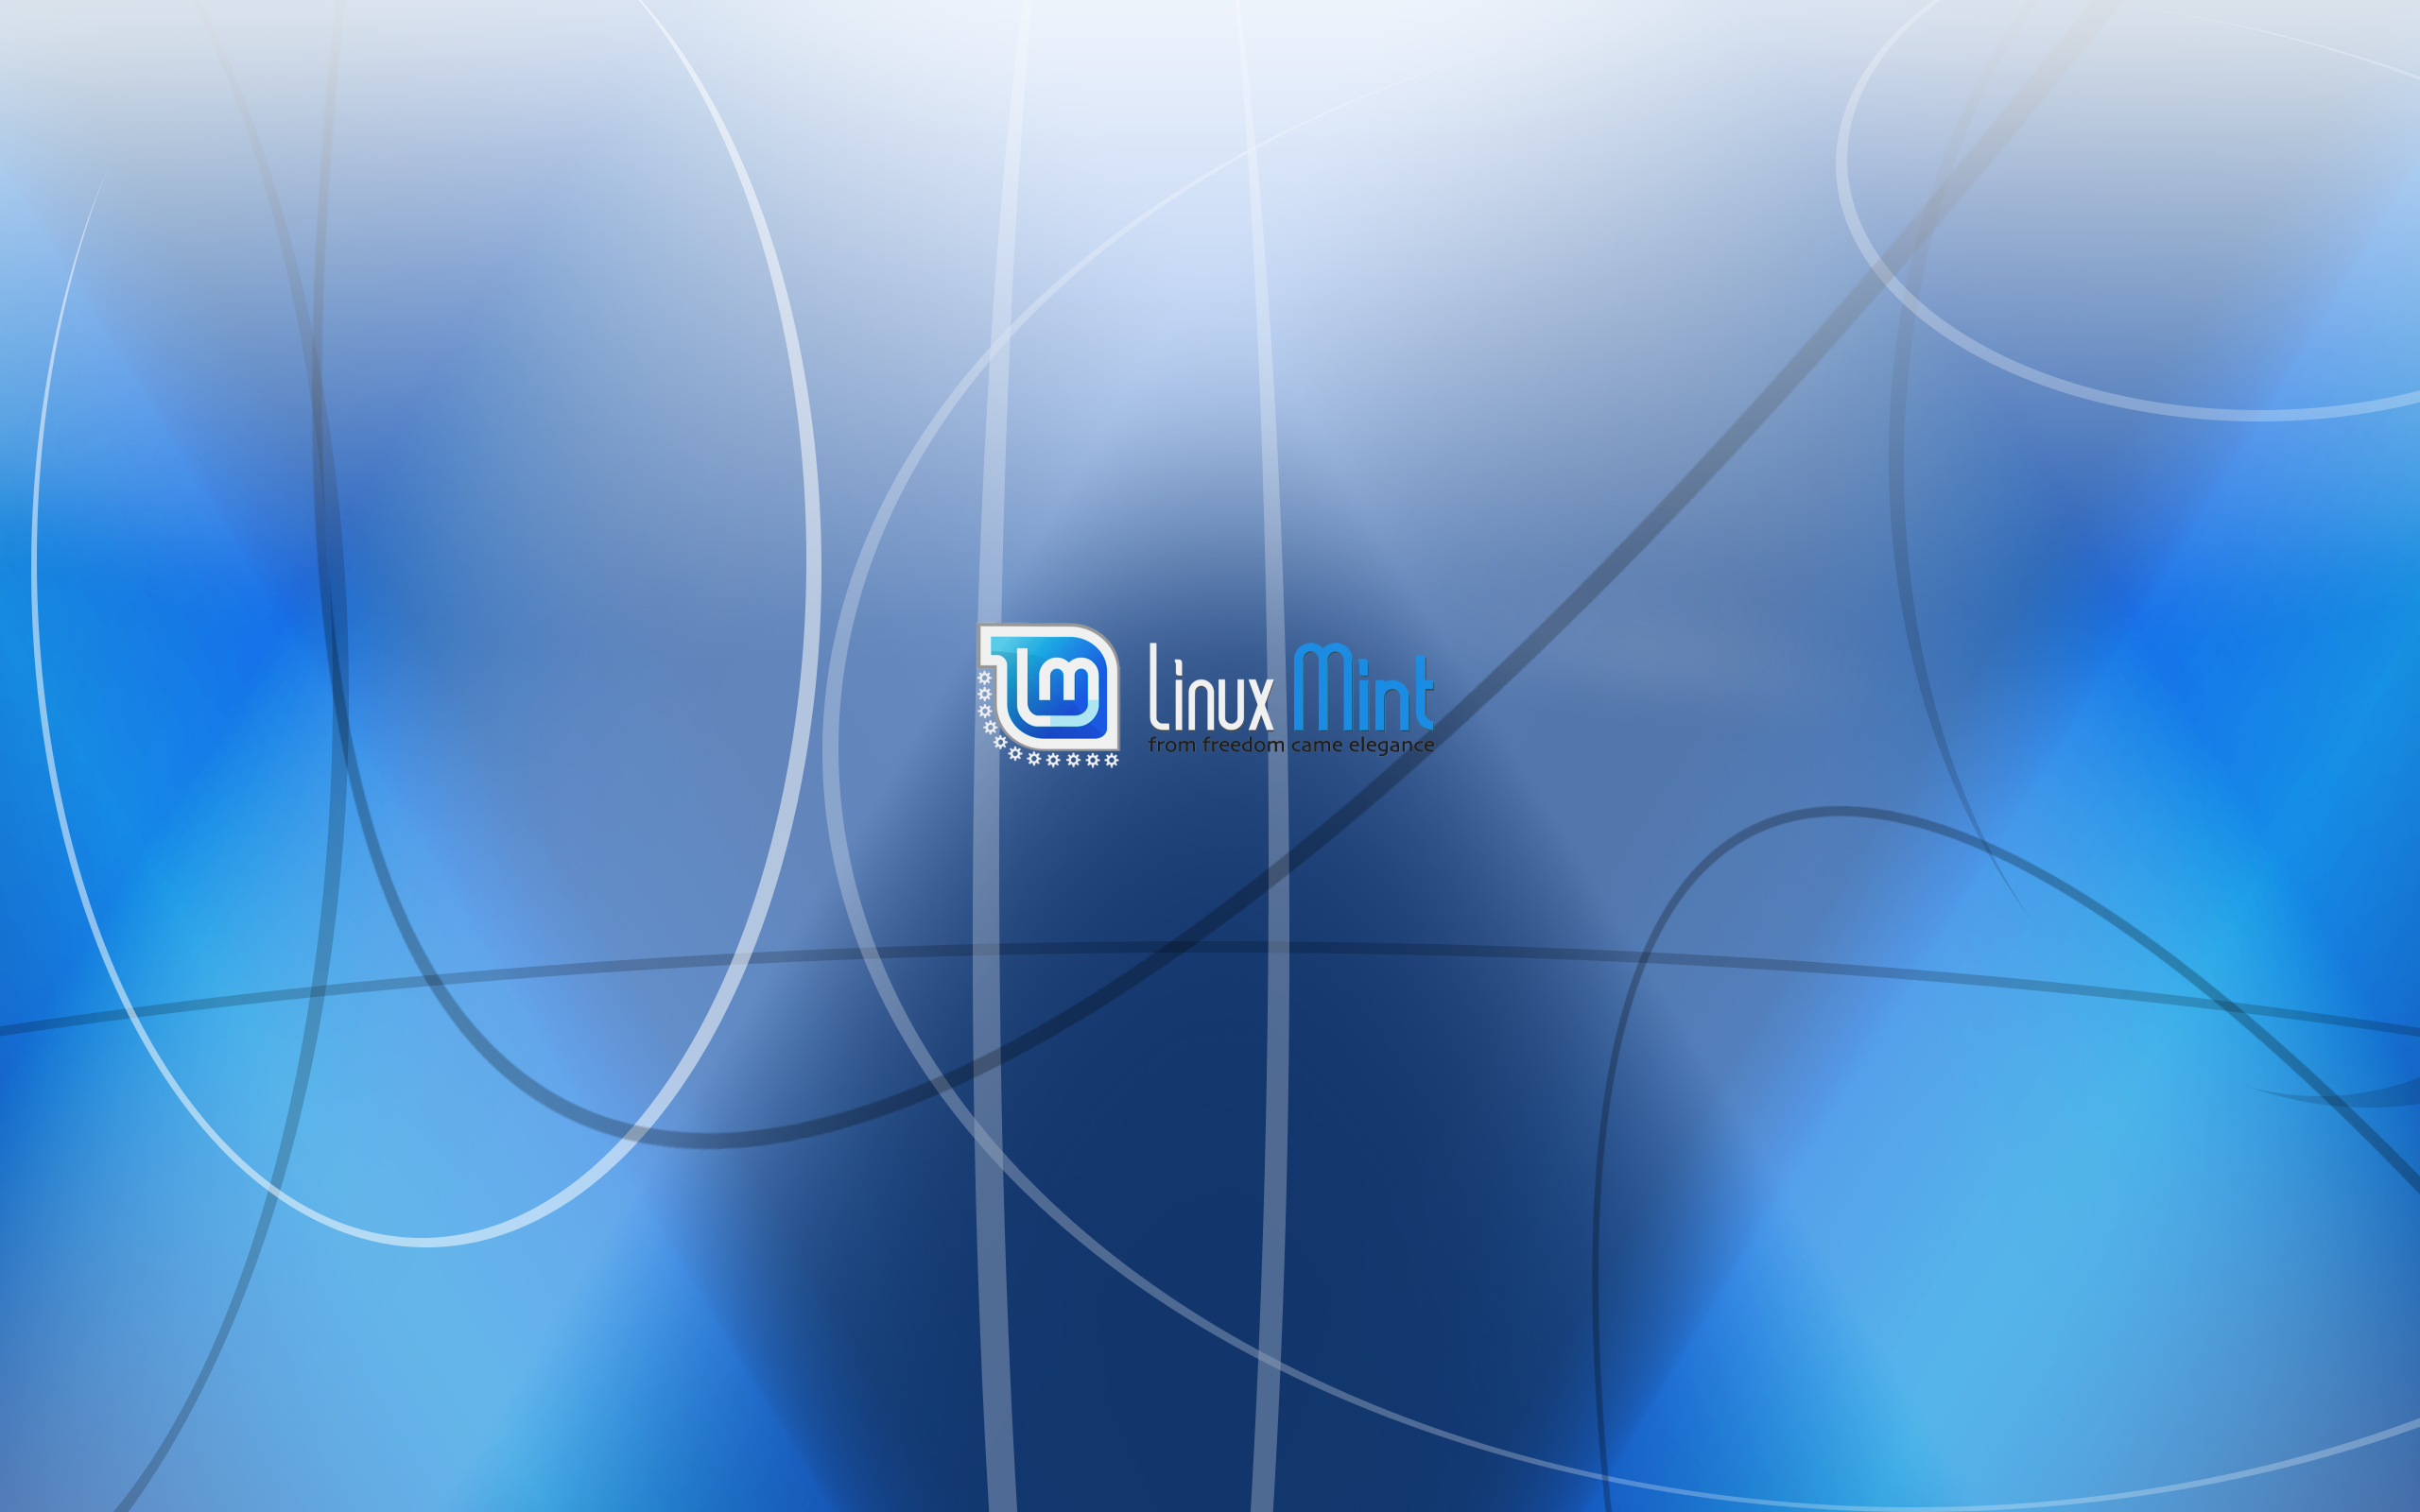 Linux Mint Forums